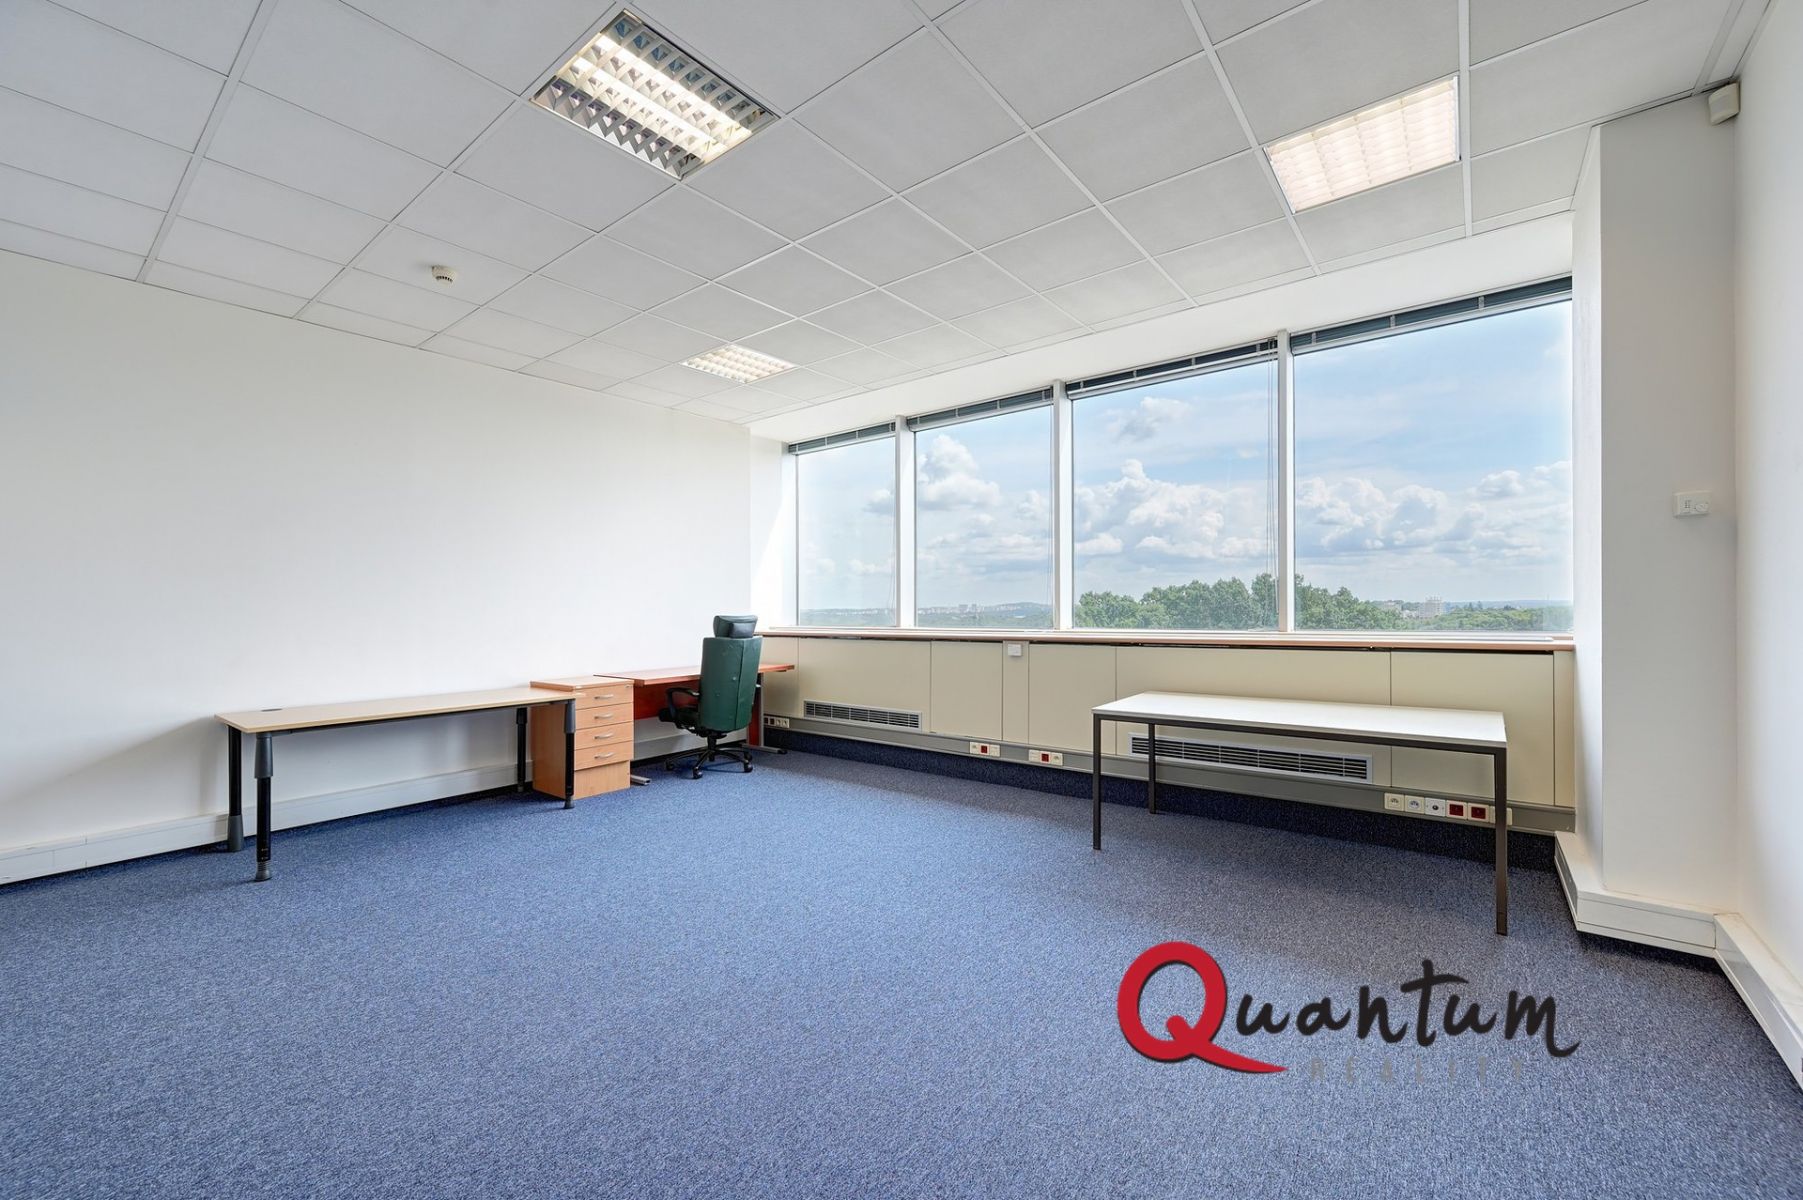 Pronájem 2 kanceláří 40 a 32 m2 v administrativní budově Shiran Tower, Praha 6 - Vokovice, ul. Lužná, obrázek č. 1